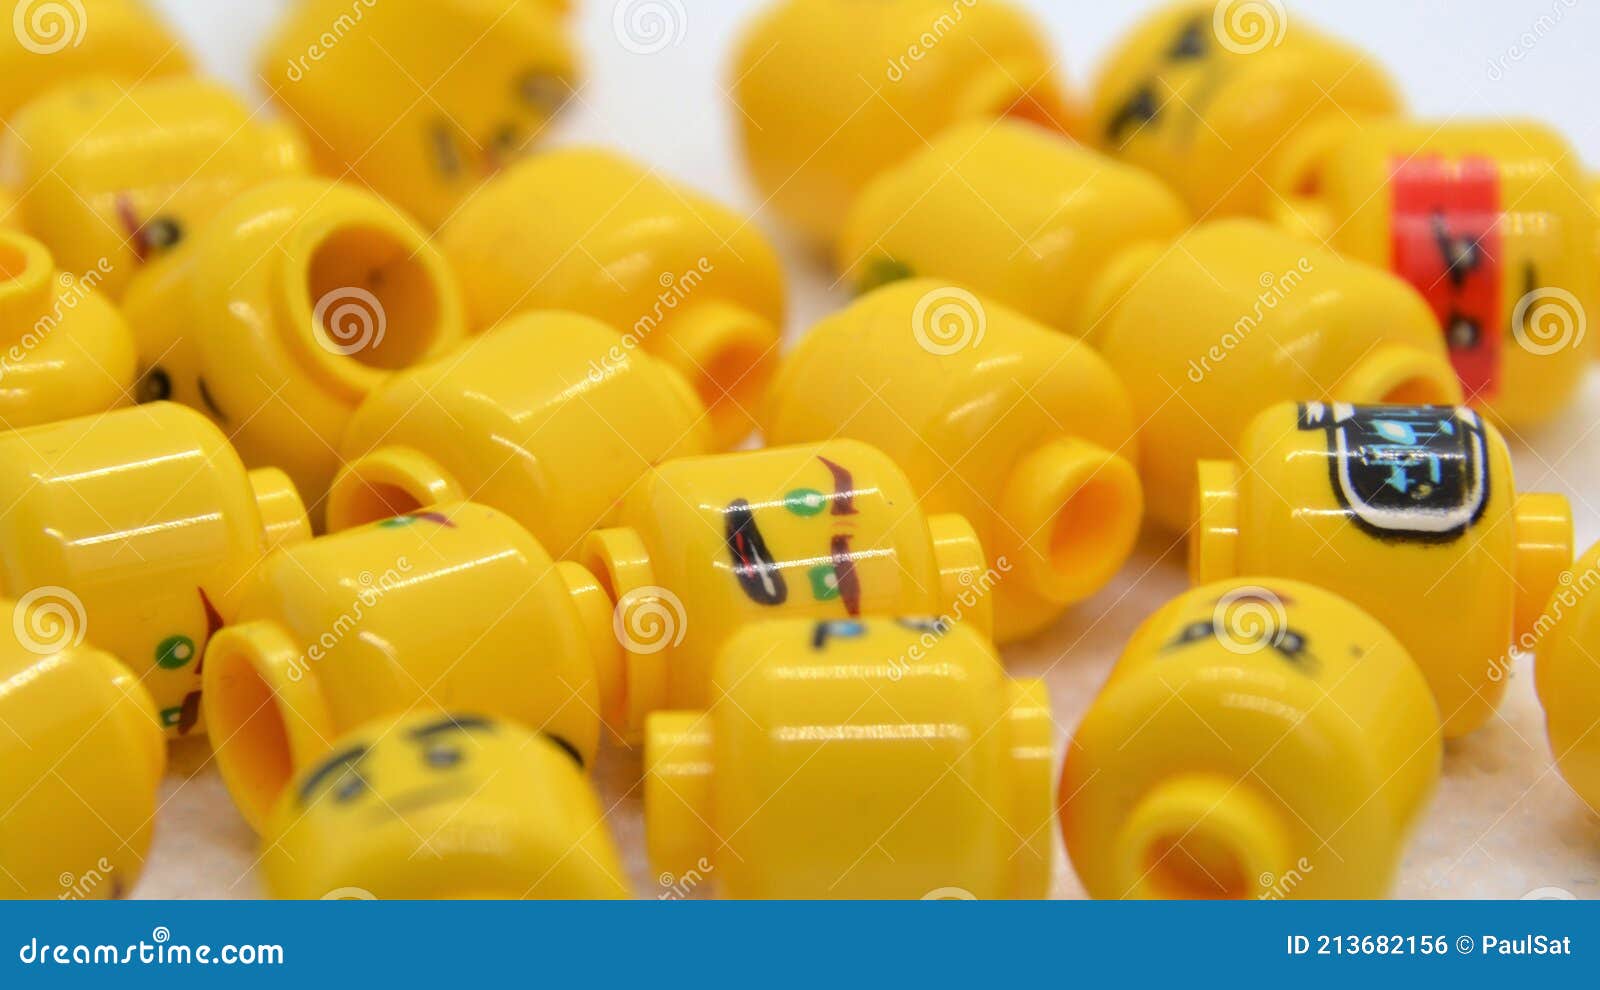 Lego-Amarillo Minifigura Cabezas/20 diferentes al azar recogido caras por orden # 